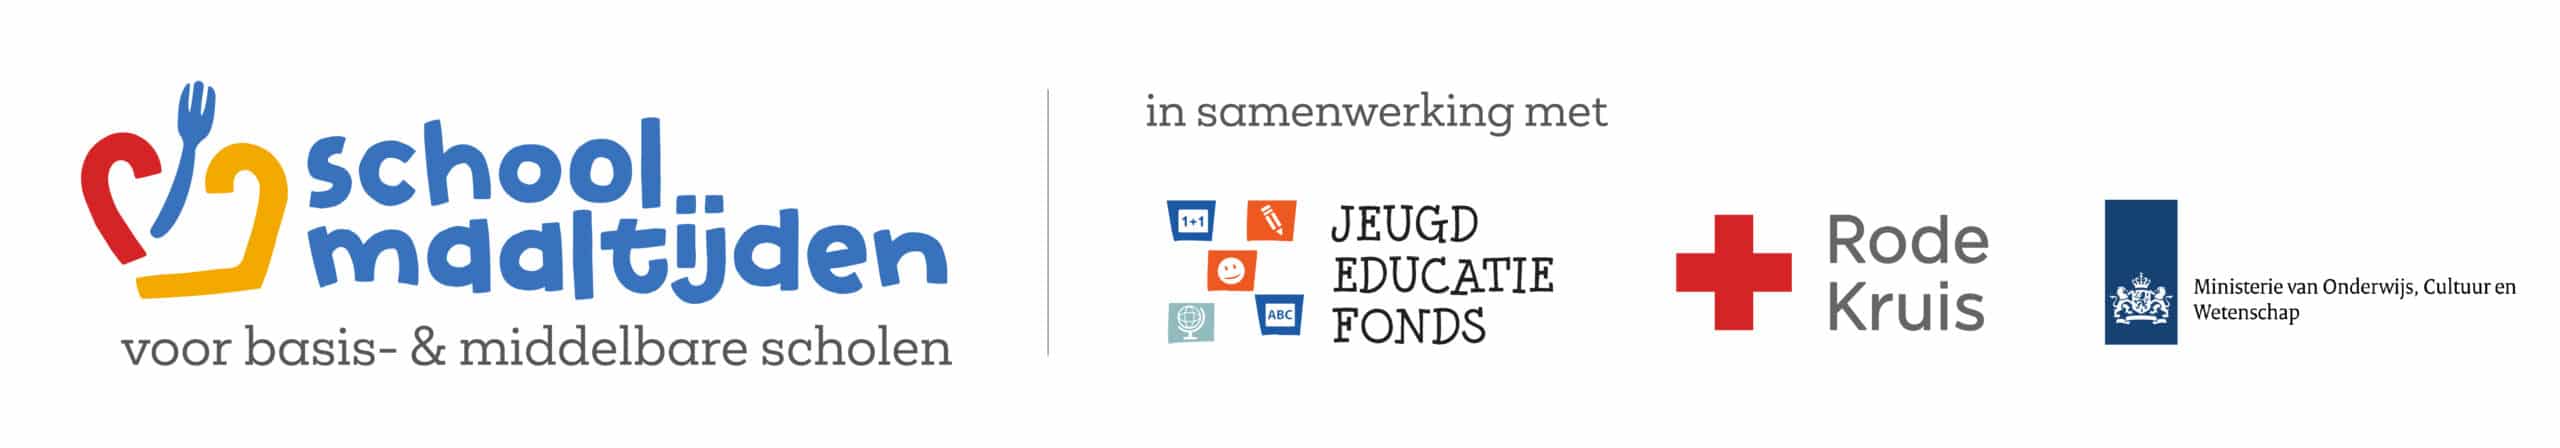 Logo van het schoolmaaltijdenprogramma met daarbij de logo's van het Jeugdeducatiefonds, Rode kruis en Ministerie van Onderwijs, Cultuur en Wetenschap.